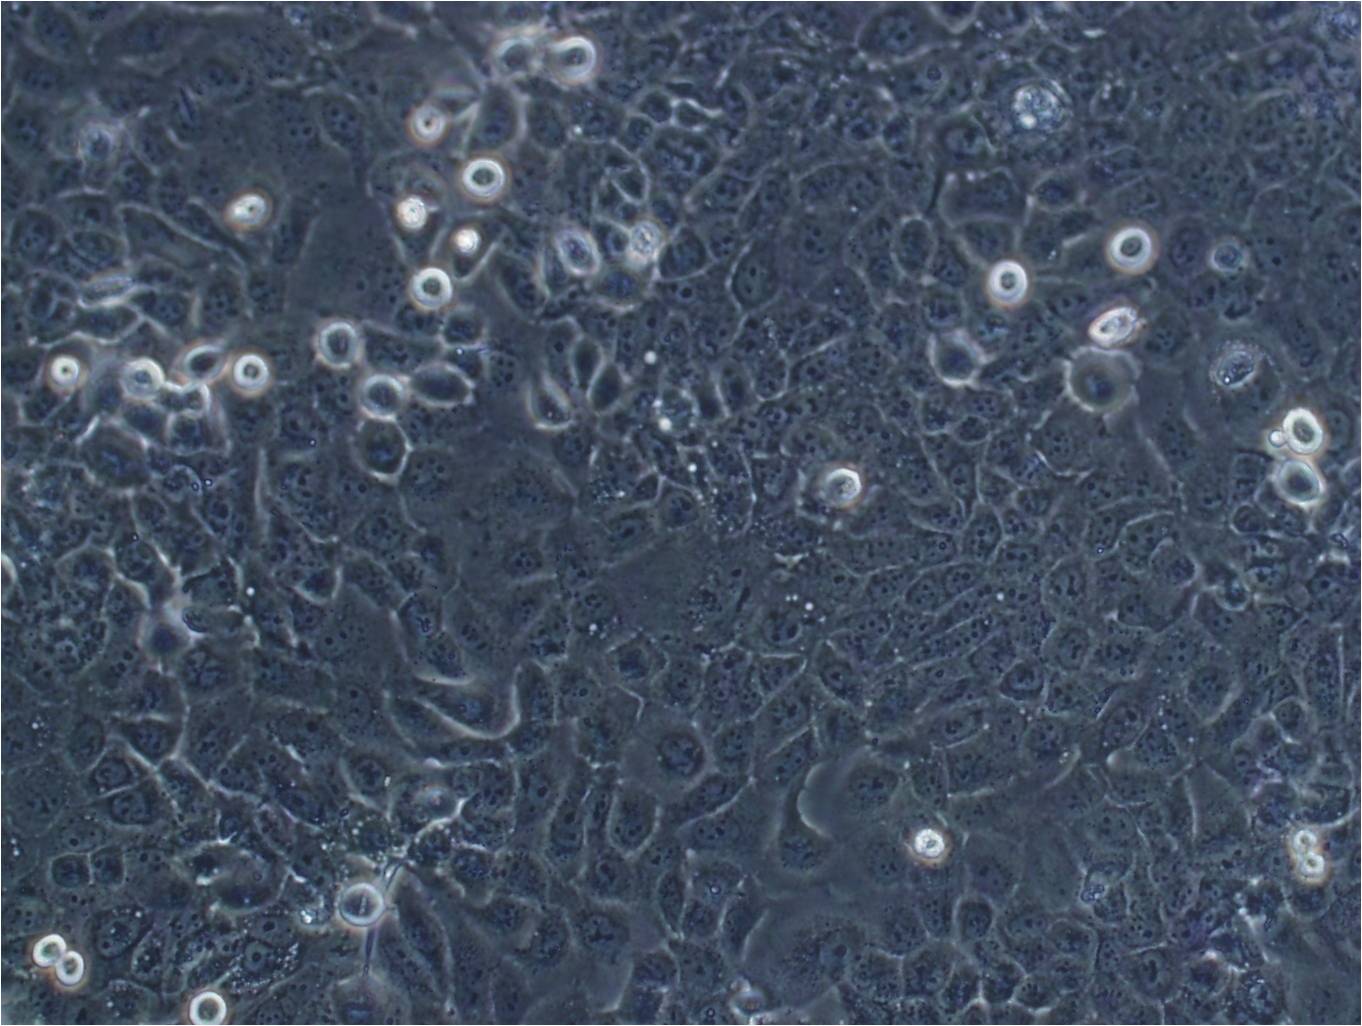 MUG-Chor1 Cells|人骶骨脊索瘤克隆细胞(包送STR鉴定报告)